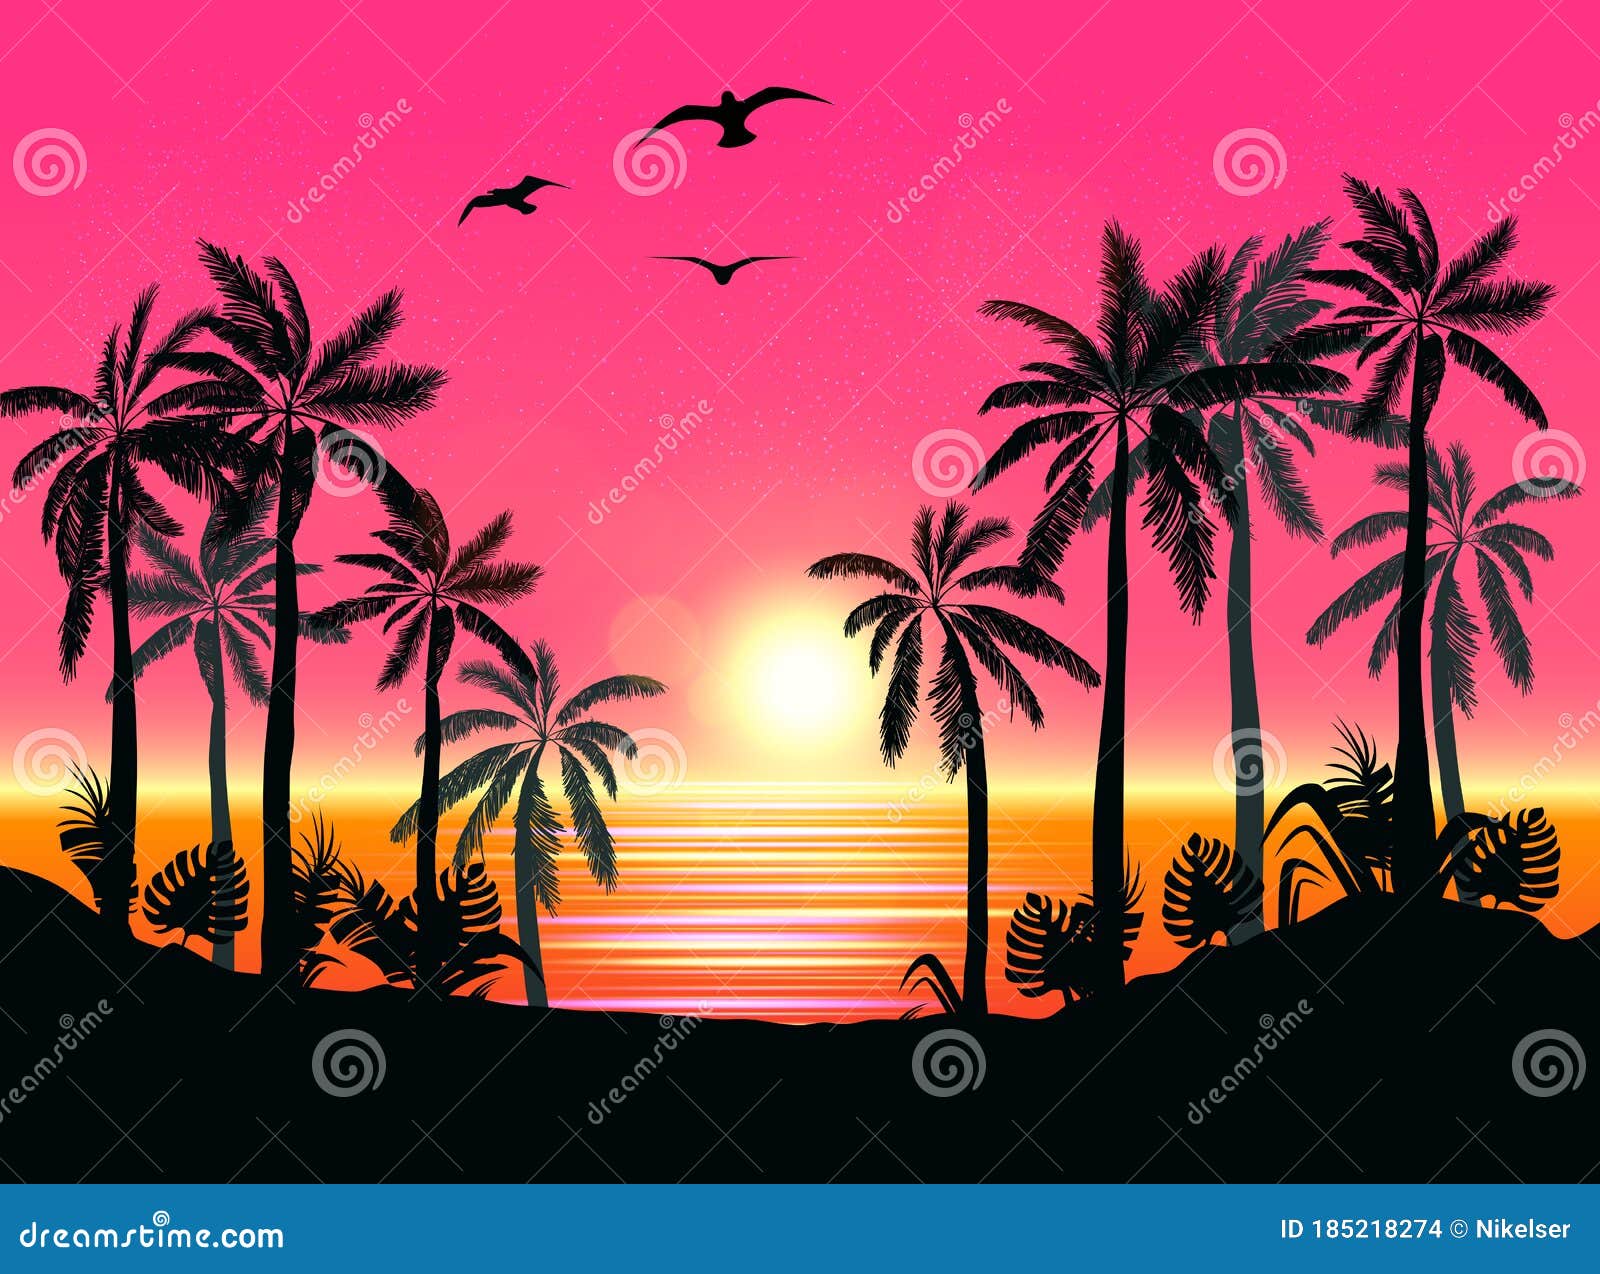 Tropical sunset  Beach wallpaper Sunset wallpaper Dream vacations